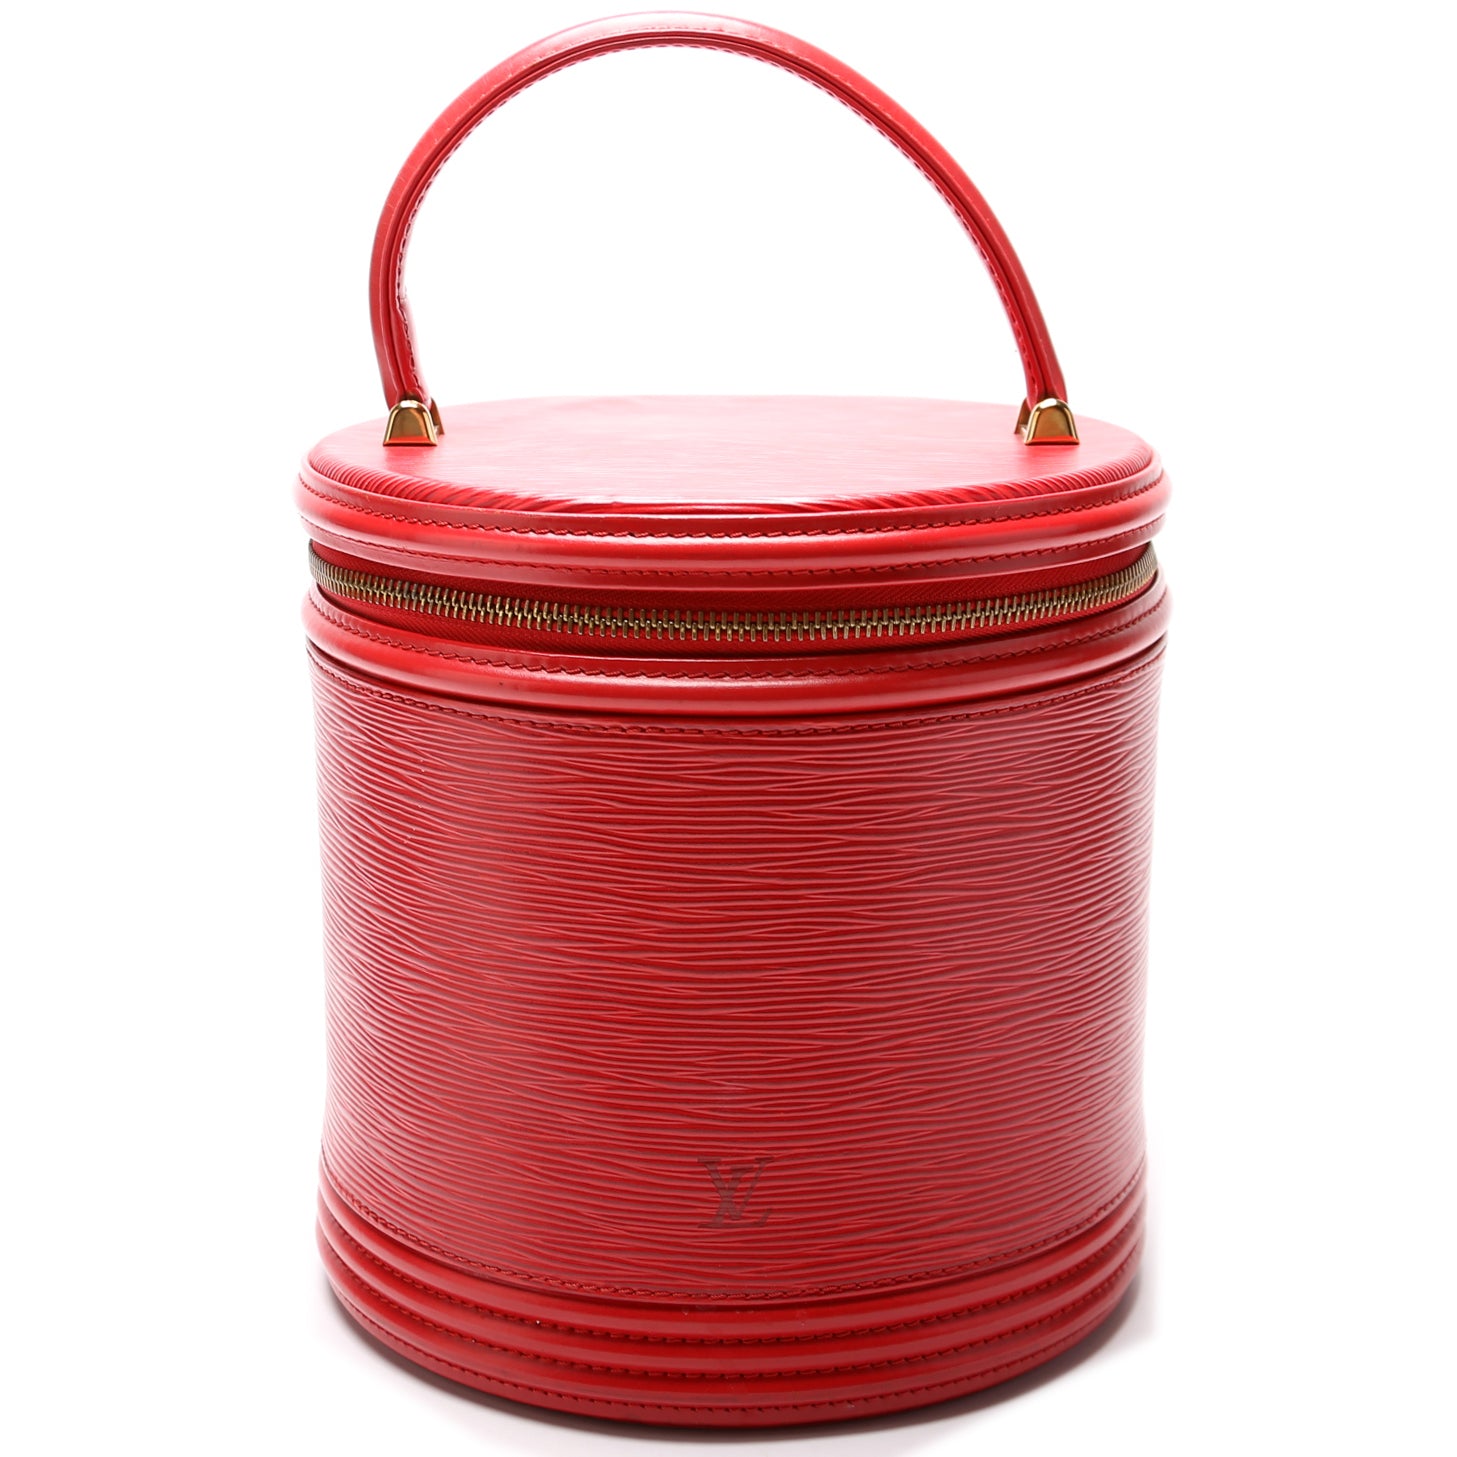 Louis Vuitton // Epi Leather Shoulder Bag // Castilian Red // Pre